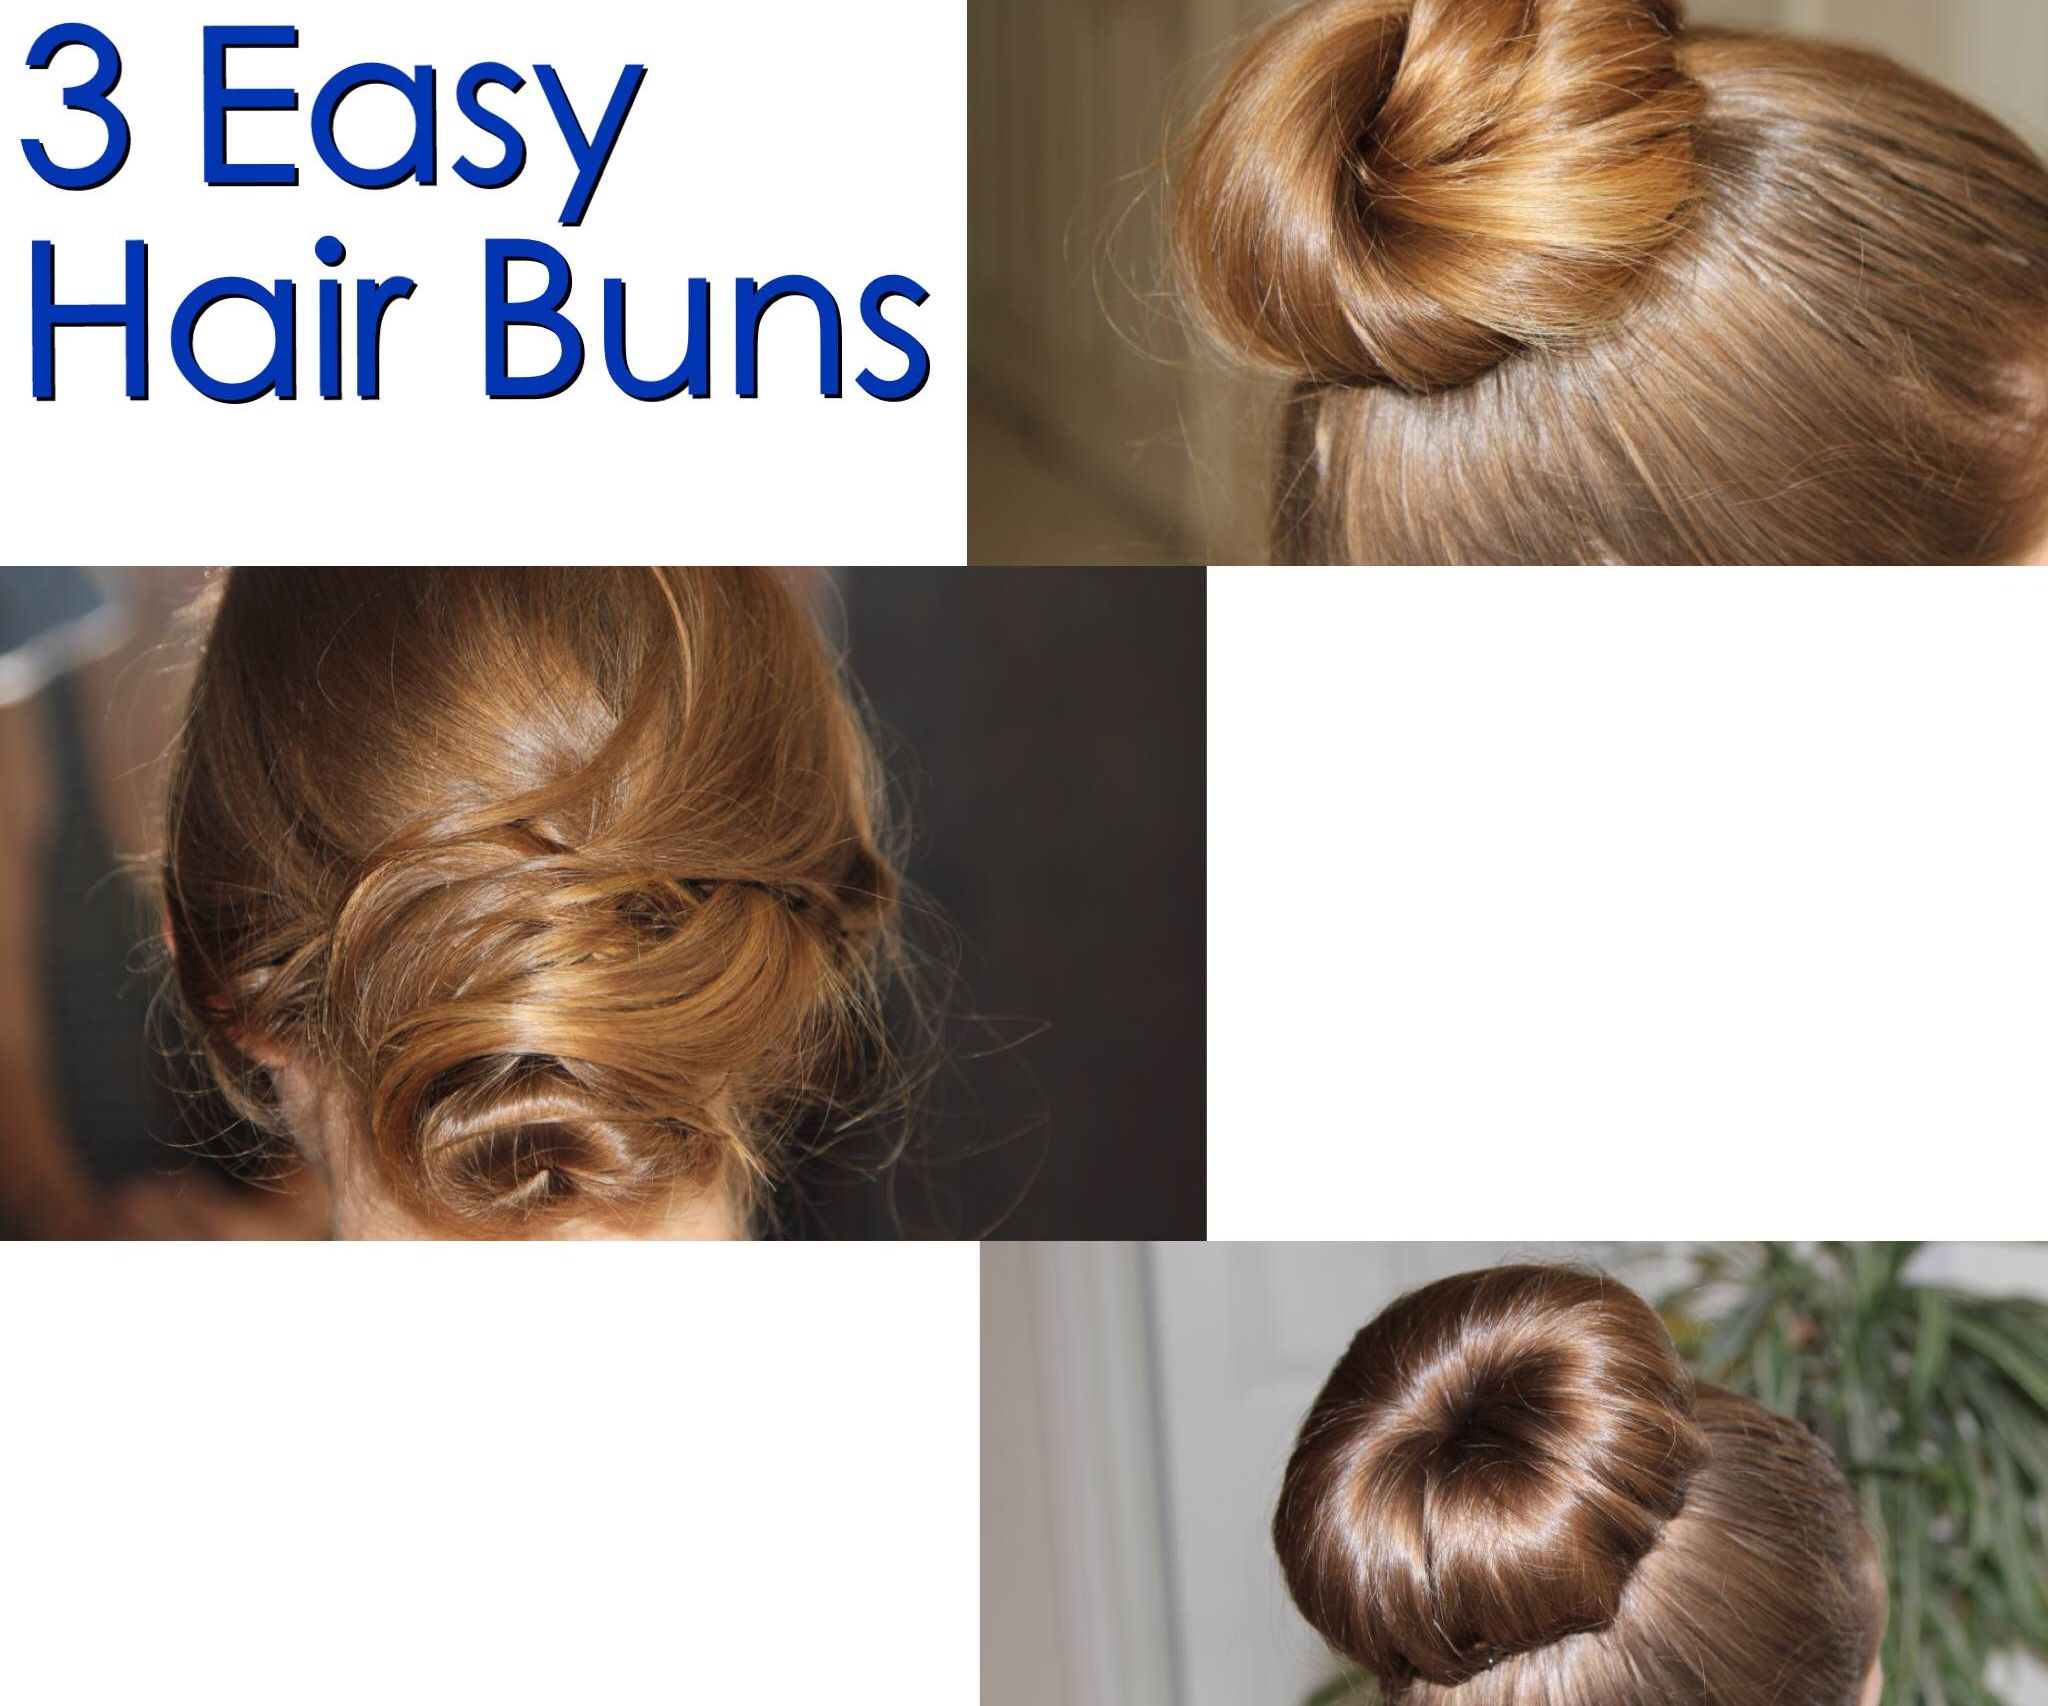 3 Easy Hair Buns